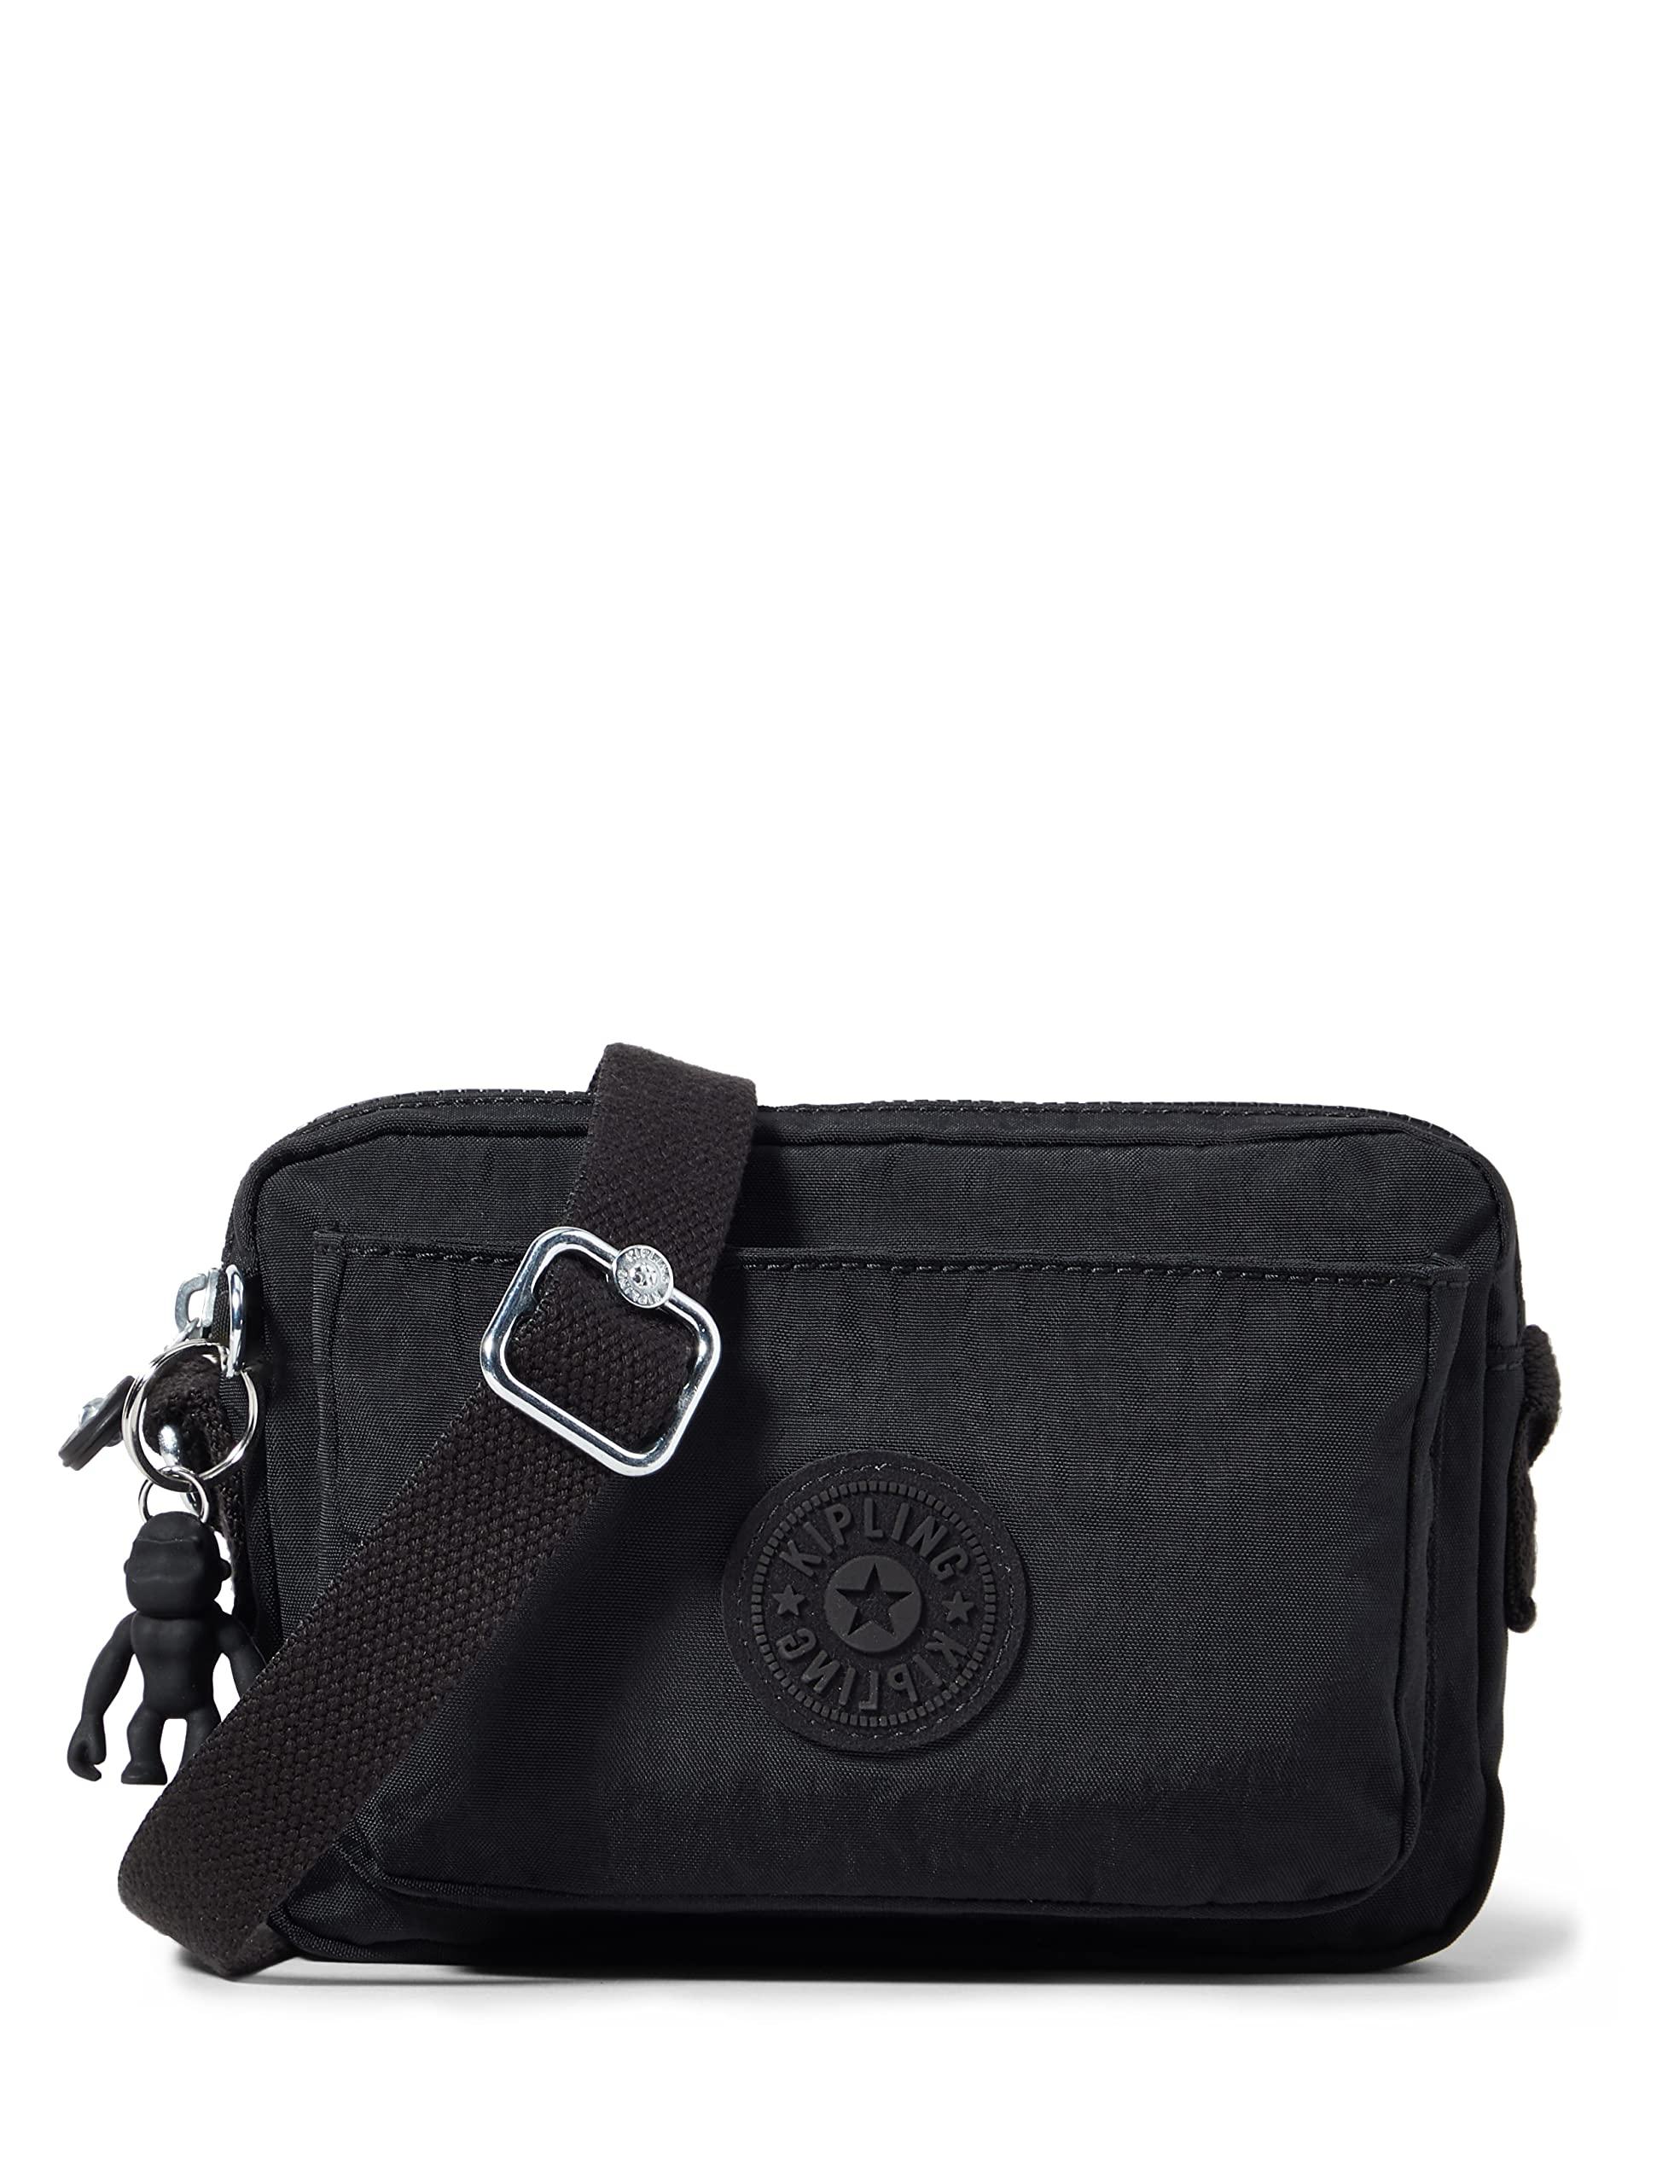 Kipling Official Amazon Abanu Shoulder Bag in Black | Lyst UK